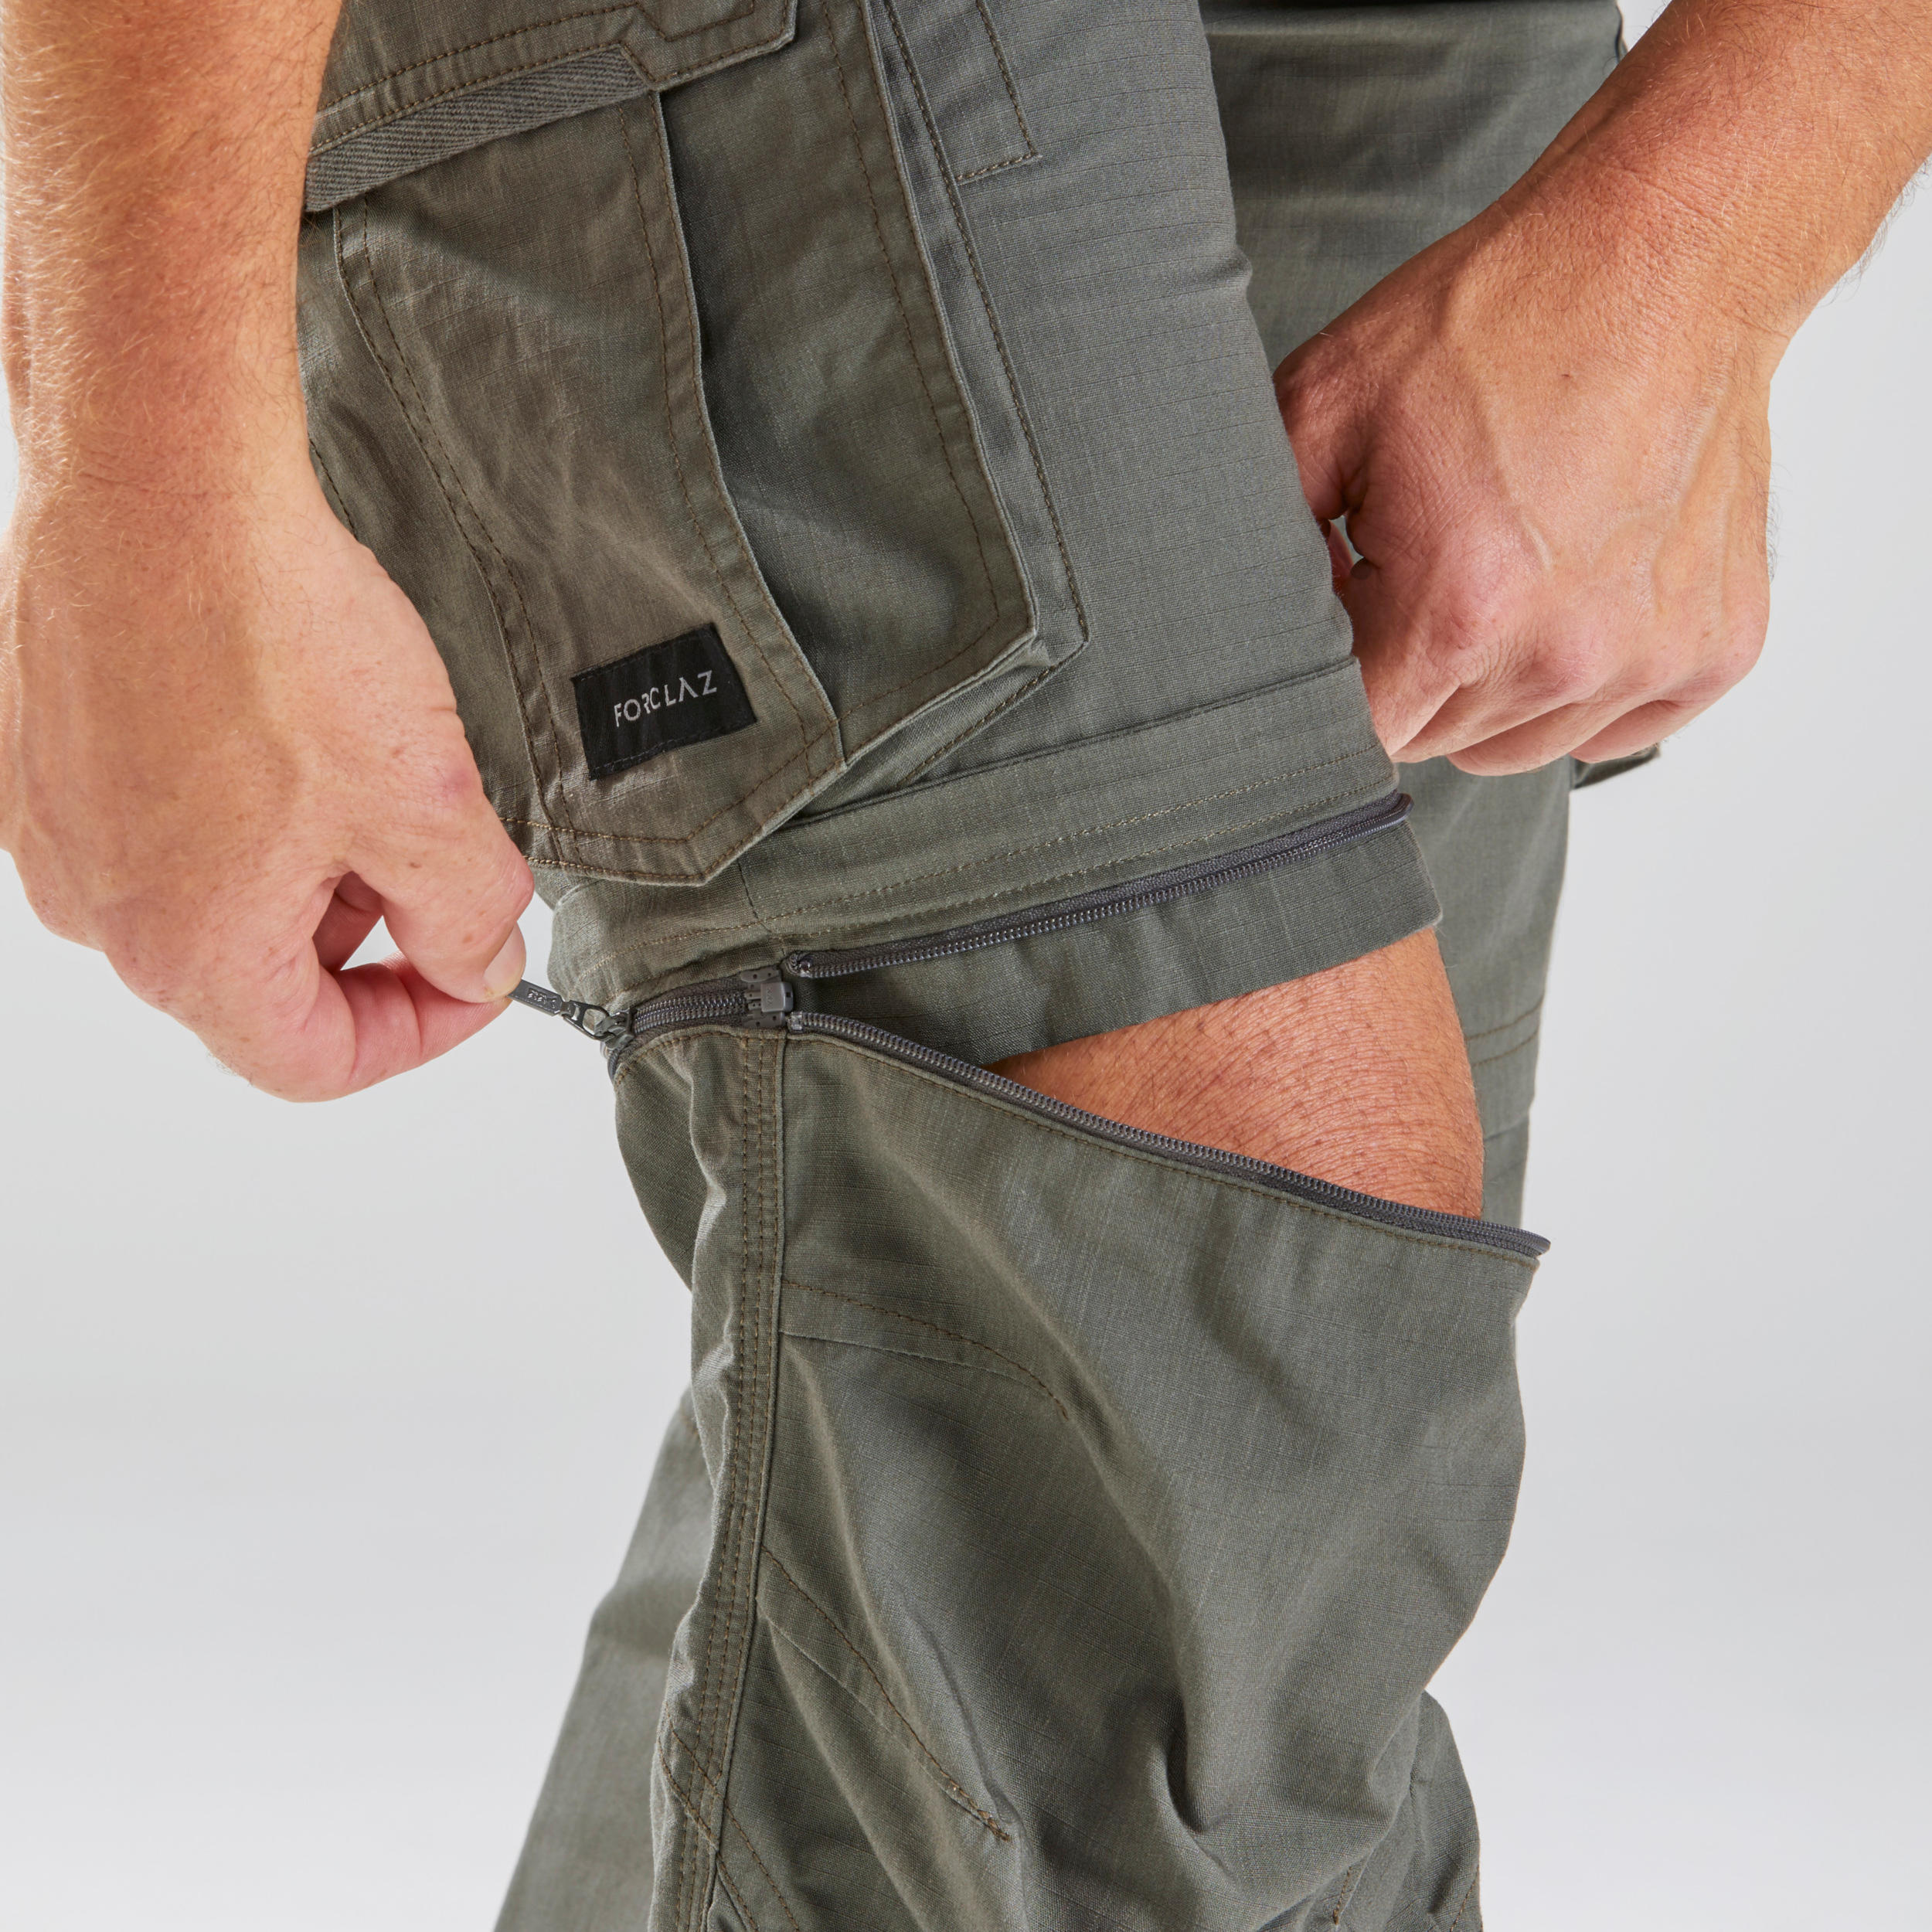 Waterproof Tactical Cargo Pants Decathlon For Men Quick Dry, Ideal